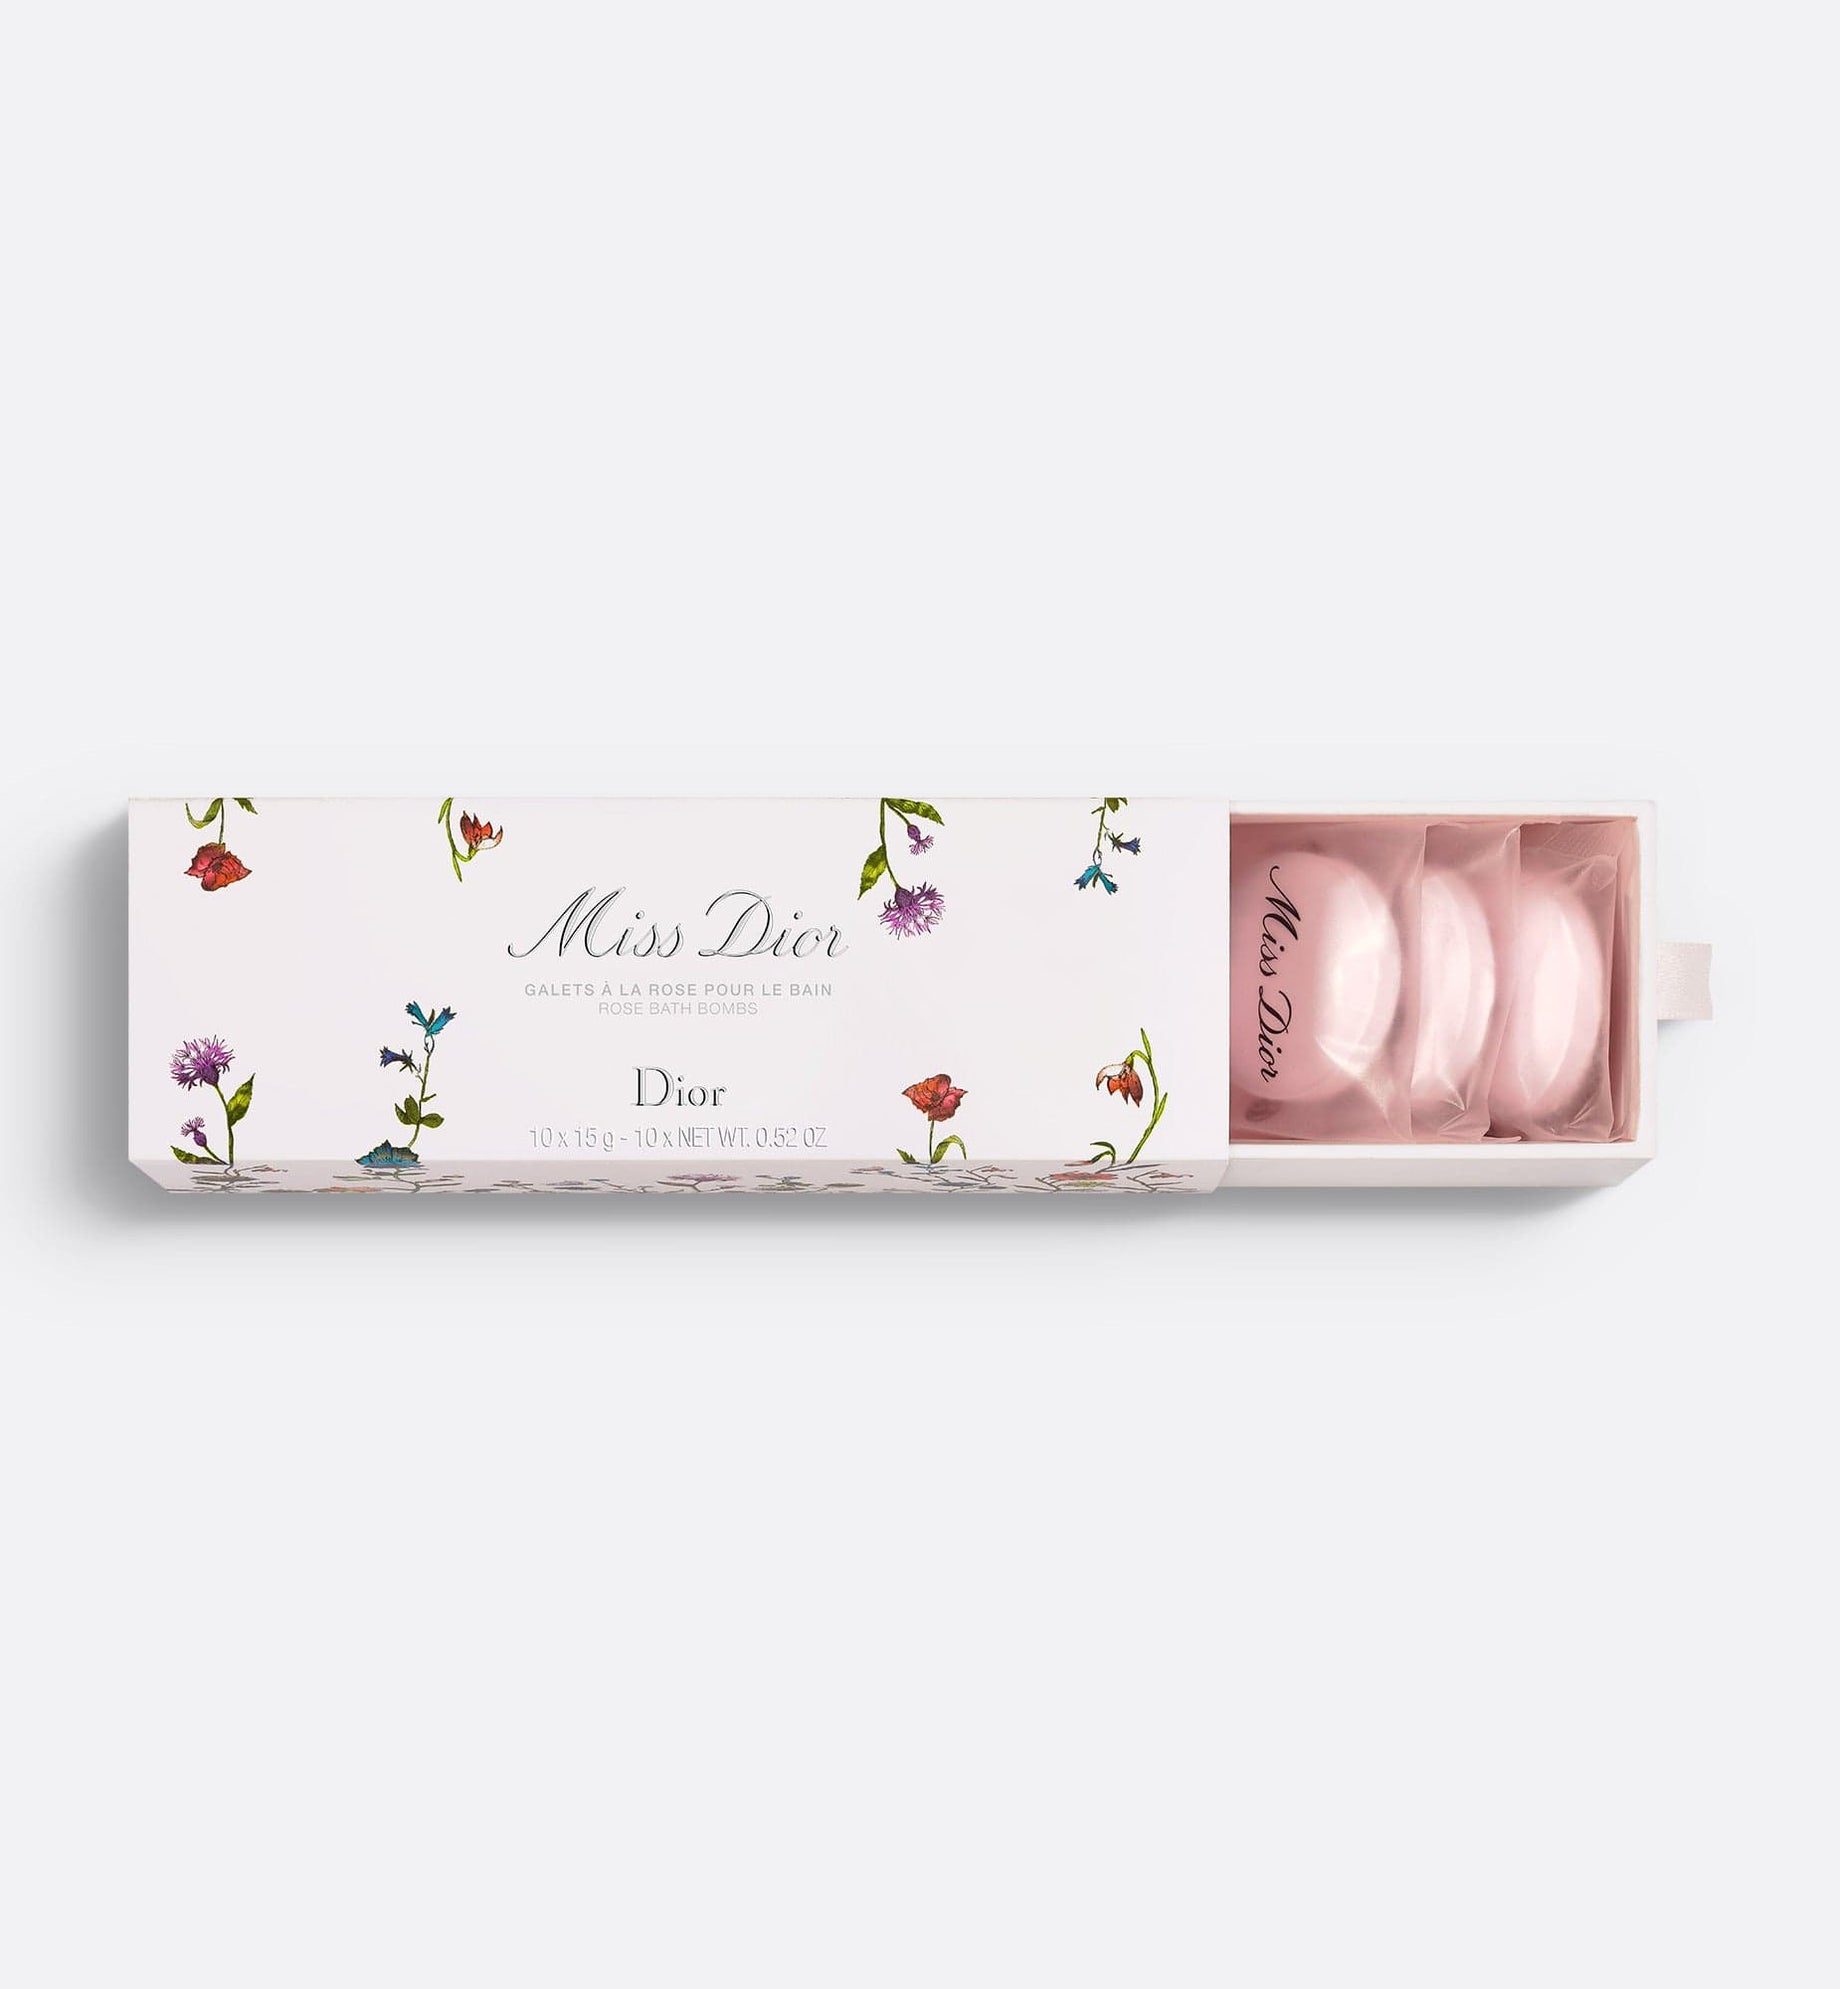 كرات الاستحمام MISS DIOR ROSE BATH BOMBS - Millefiori Couture Edition